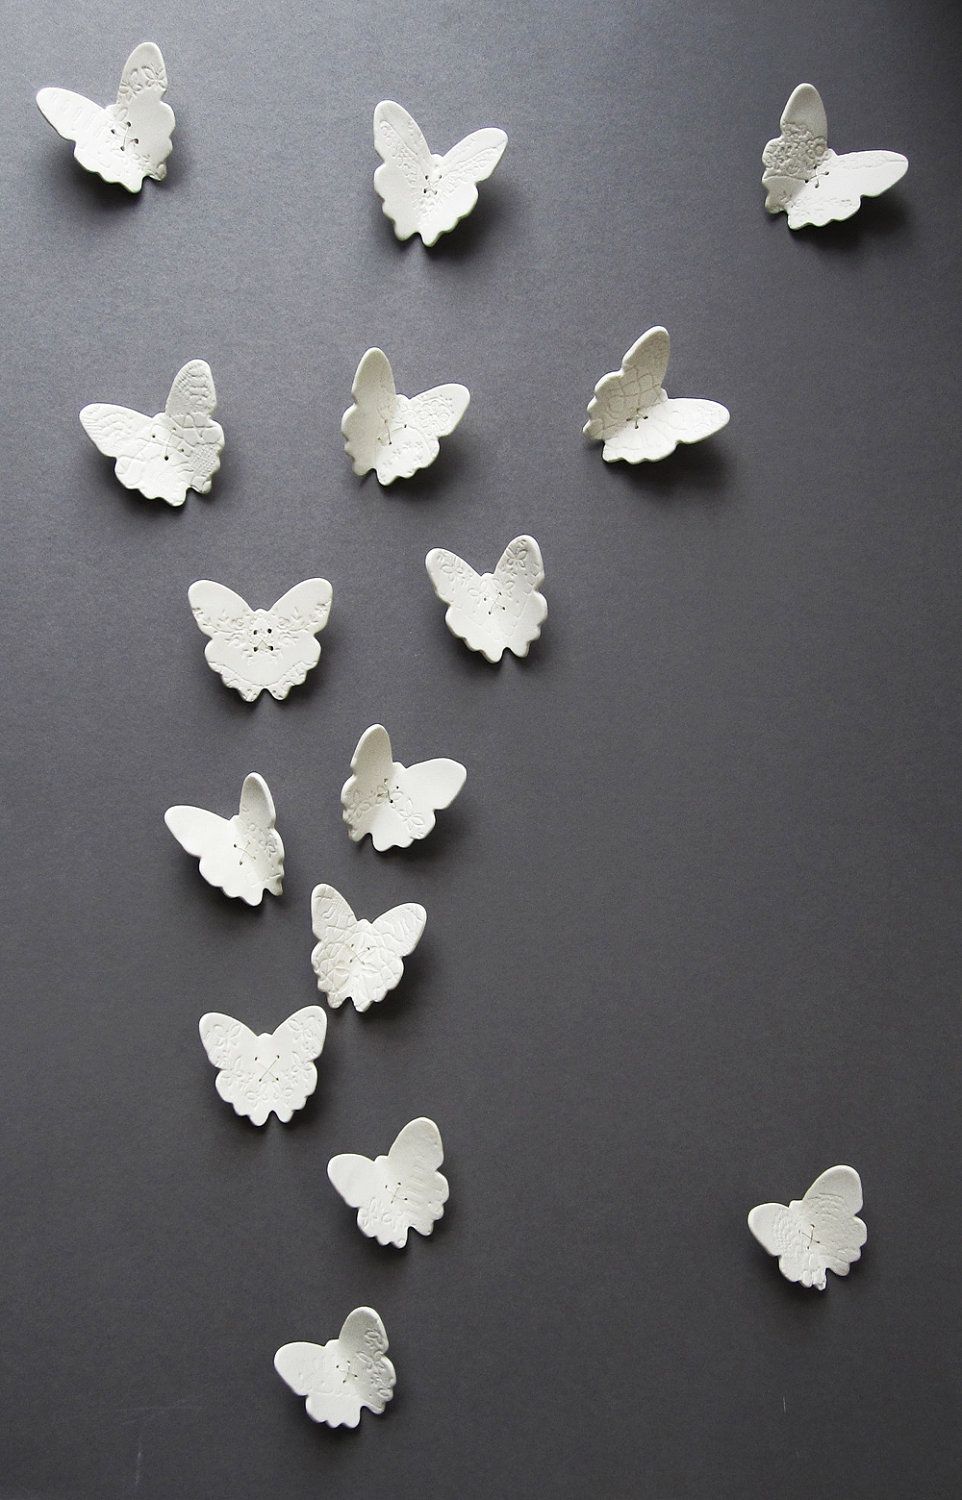 Из фарфора можно вылепить бабочек и украсить ими стену